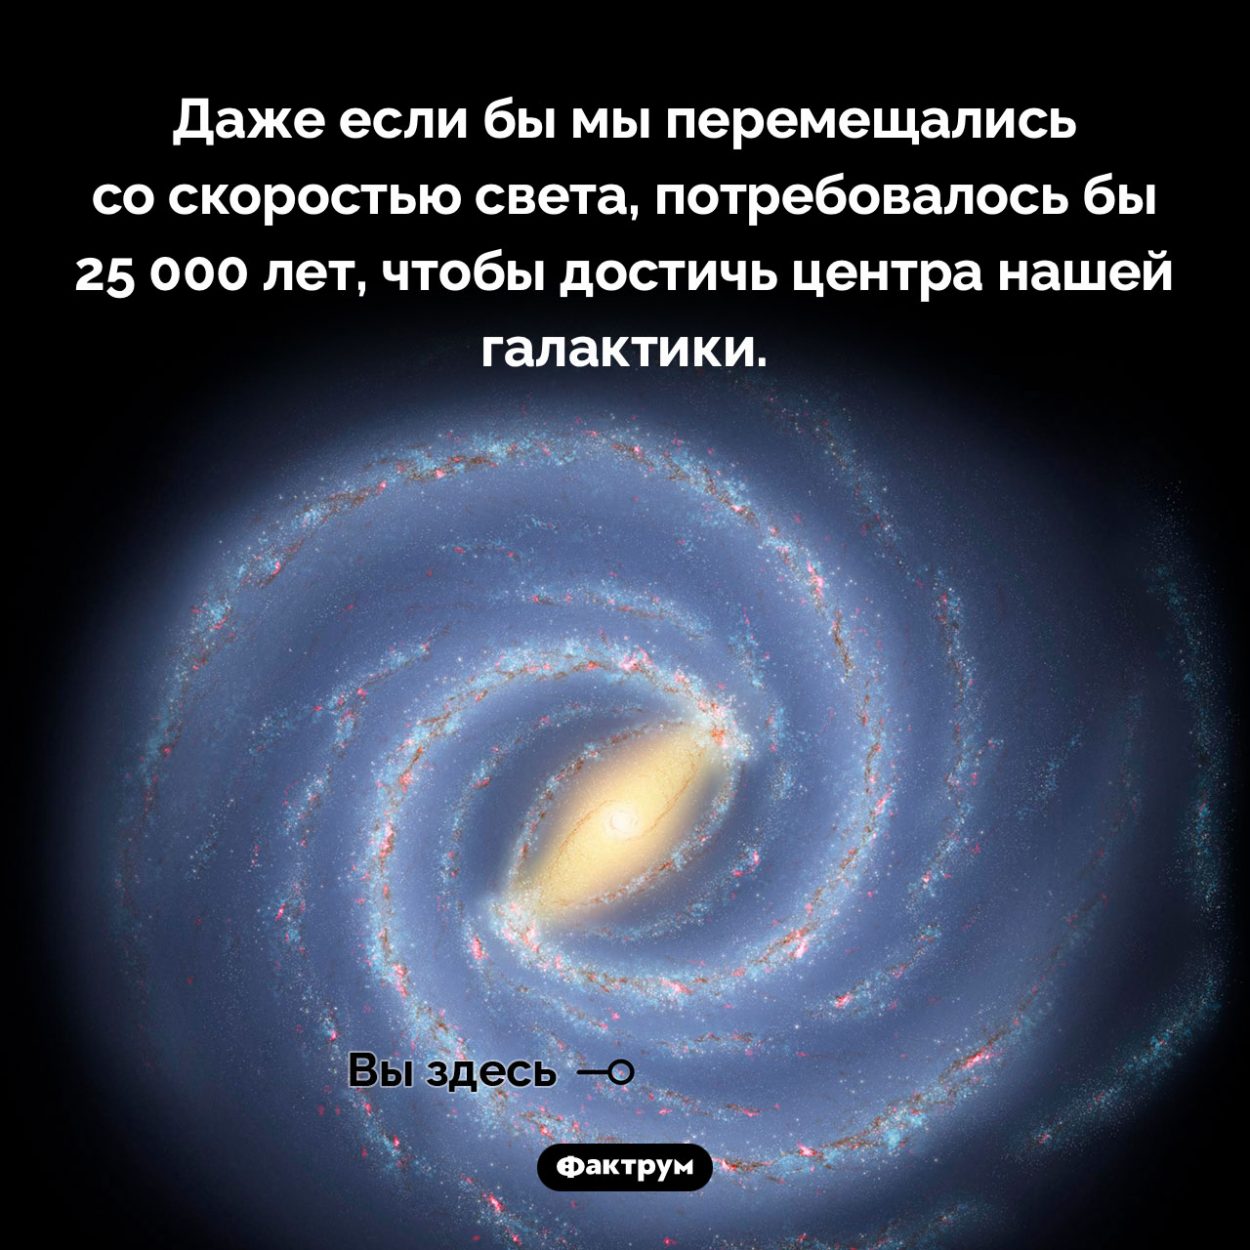 Как далек от нас центр нашей галактики. Даже если бы мы перемещались со скоростью света, потребовалось бы 25 000 лет, чтобы достичь центра нашей галактики.